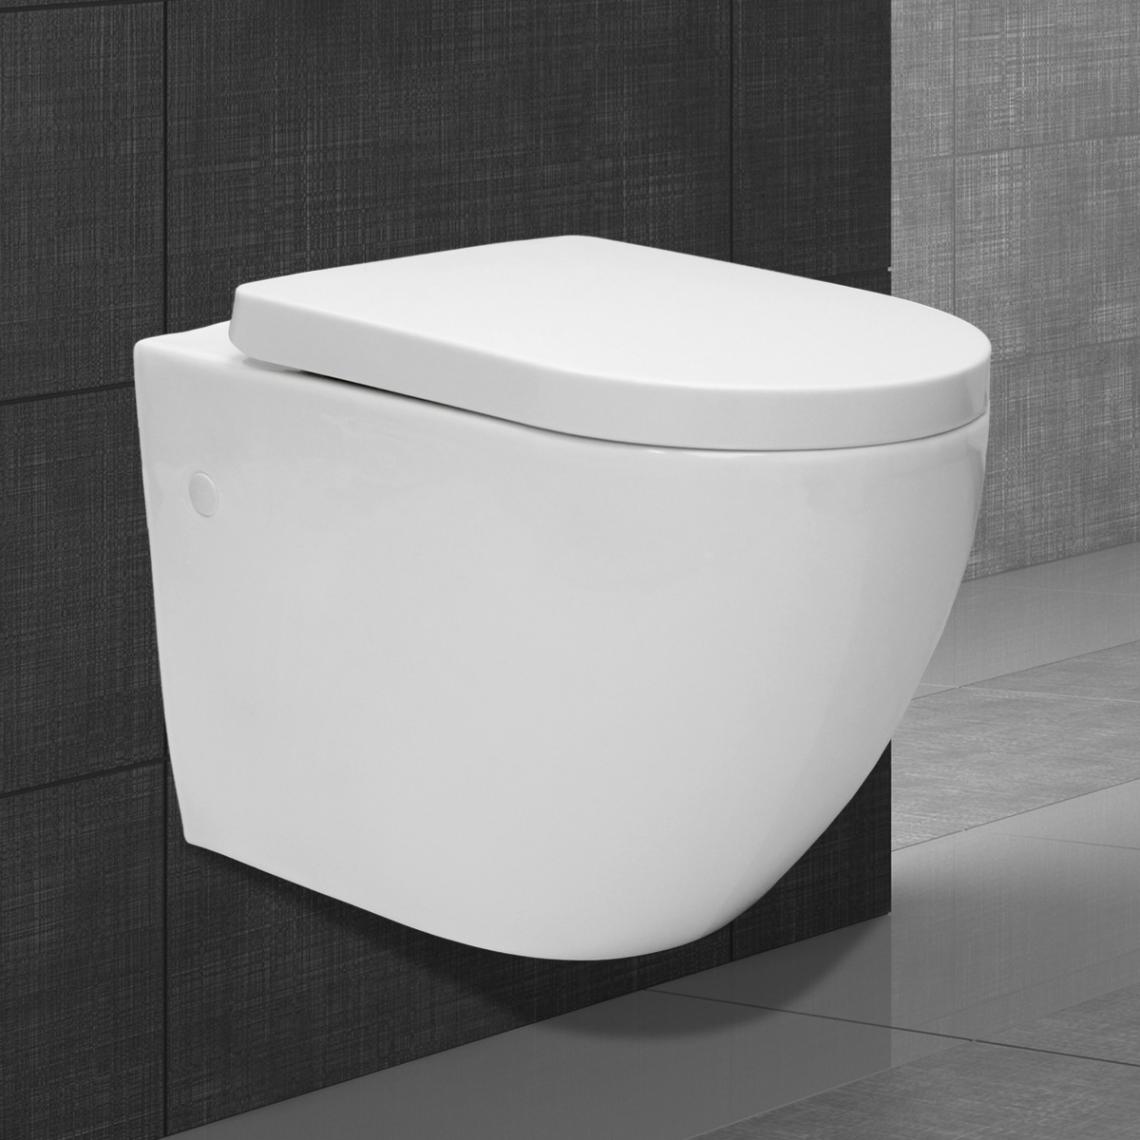 Ecd Germany - Toilette WC suspendu sans bride céramique abattant softclose en duroplast blanc - WC